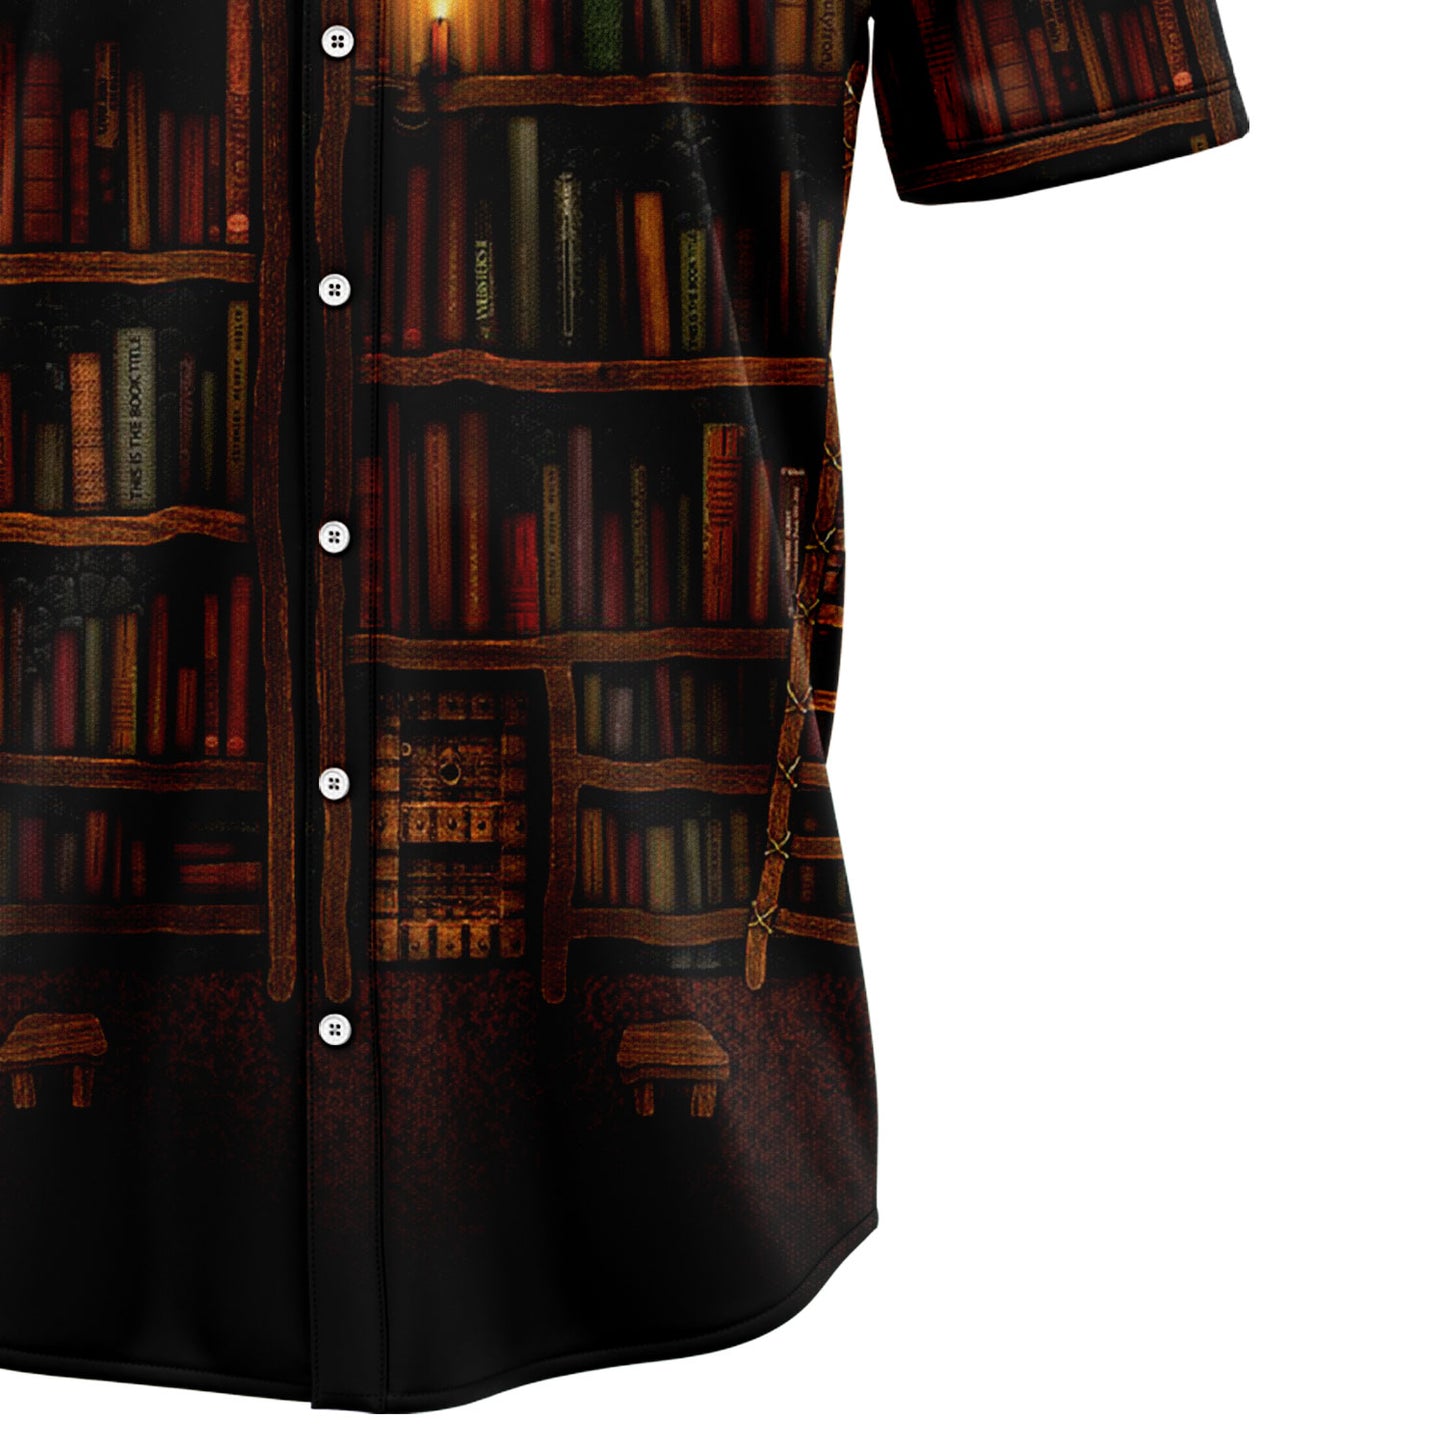 Amazing Bookshelf G5728 Hawaiian Shirt